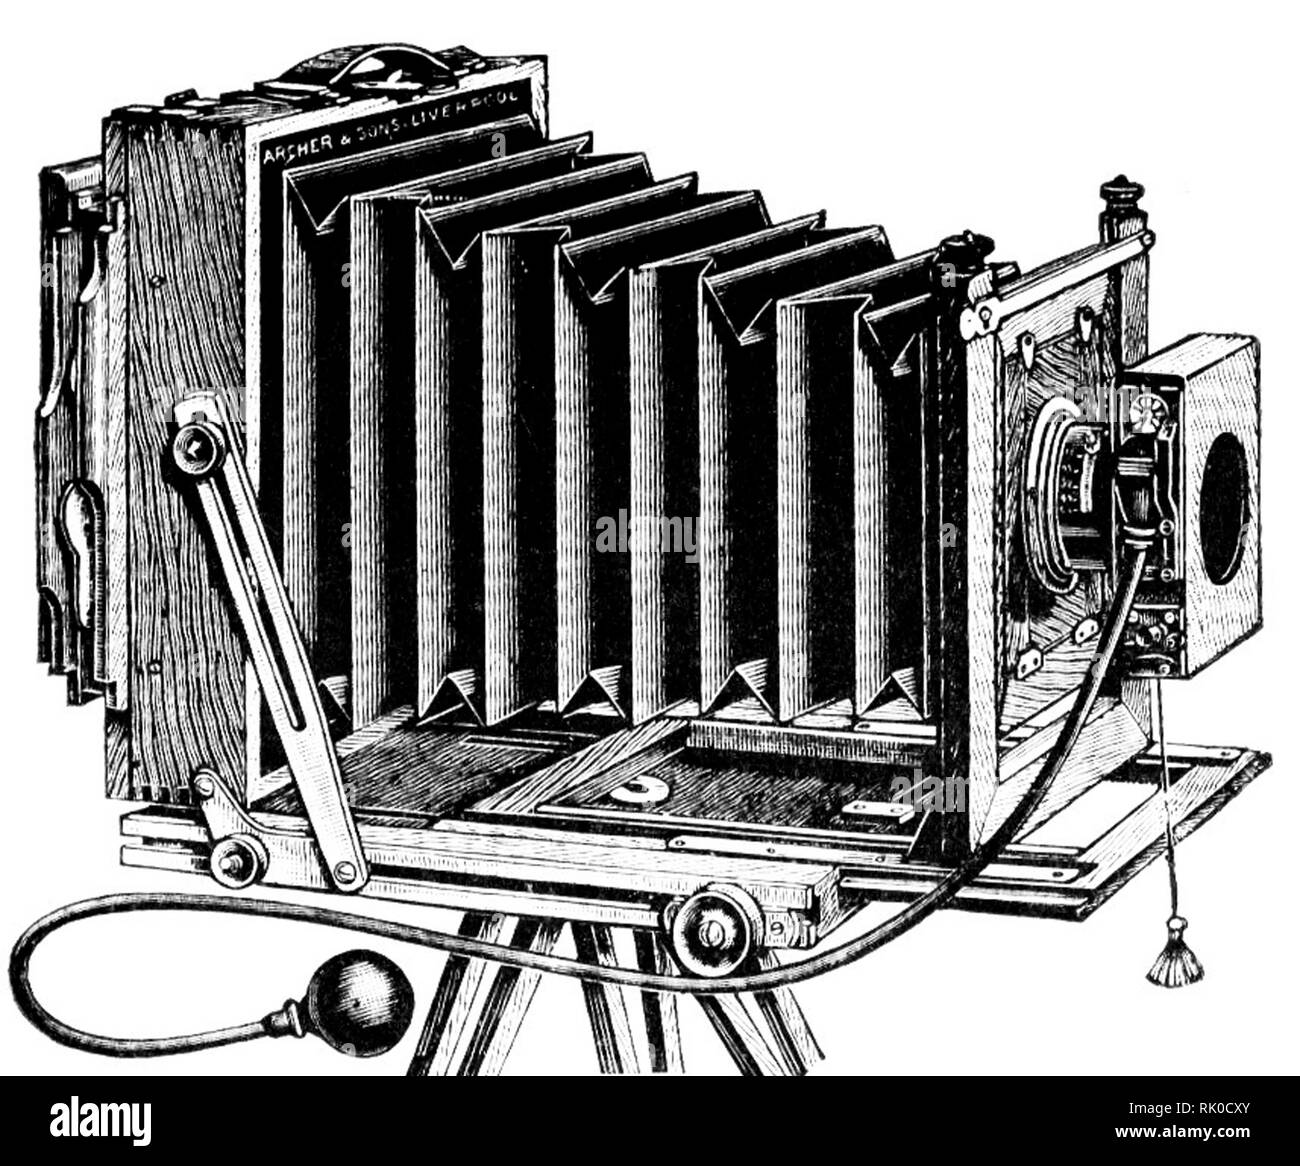 Jahrgang alte fotografische Platte Kamera - wurde durch Archer & Söhne von Liverpool gemacht Stockfoto